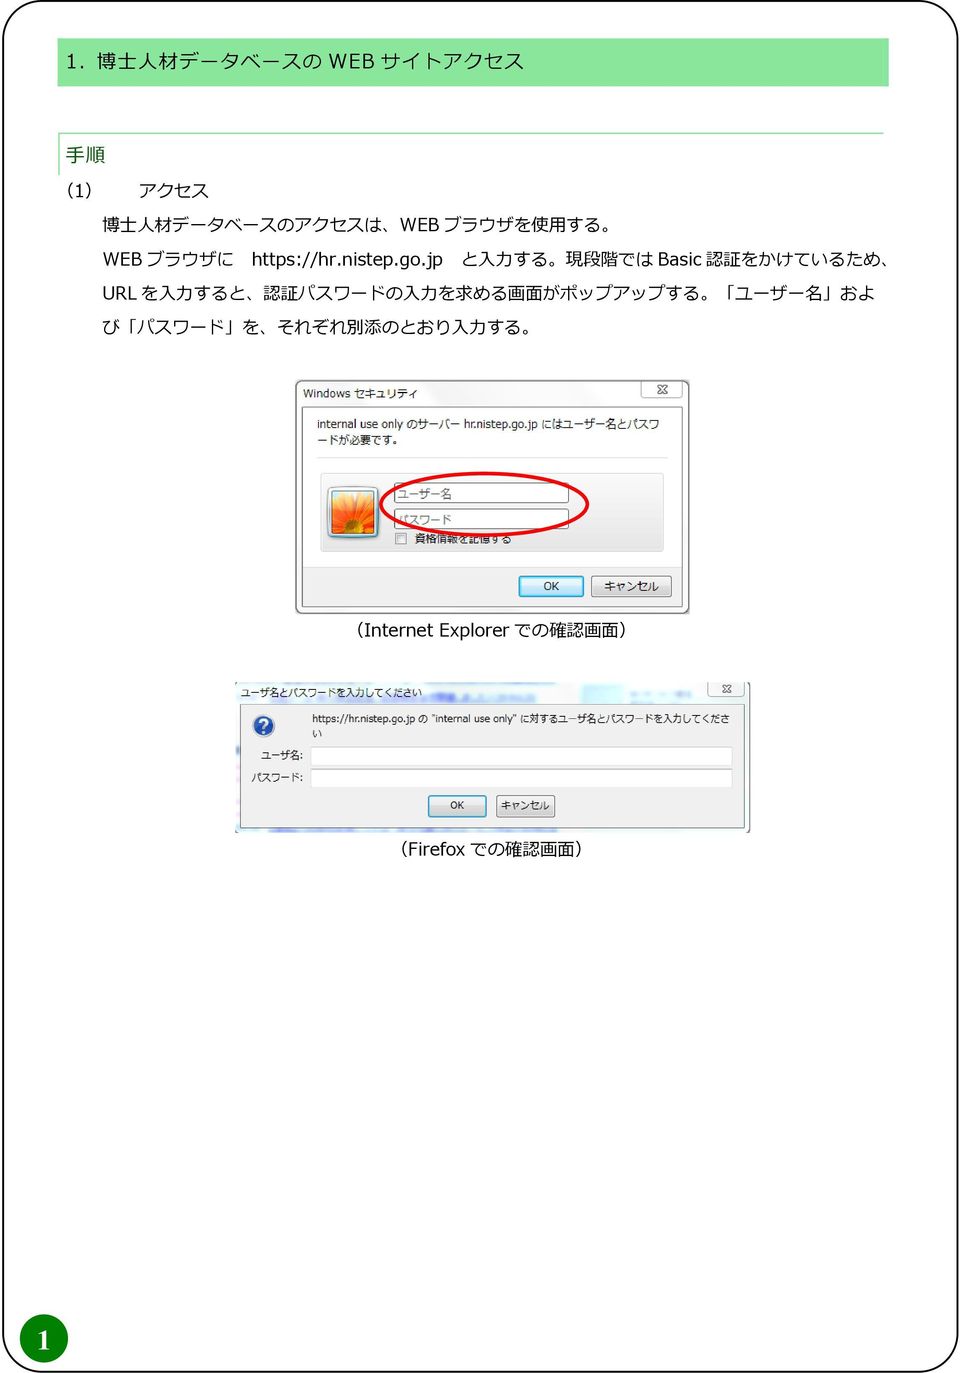 jp と 入 力 する 現 段 階 では Basic 認 証 をかけているため URL を 入 力 すると 認 証 パスワードの 入 力 を 求